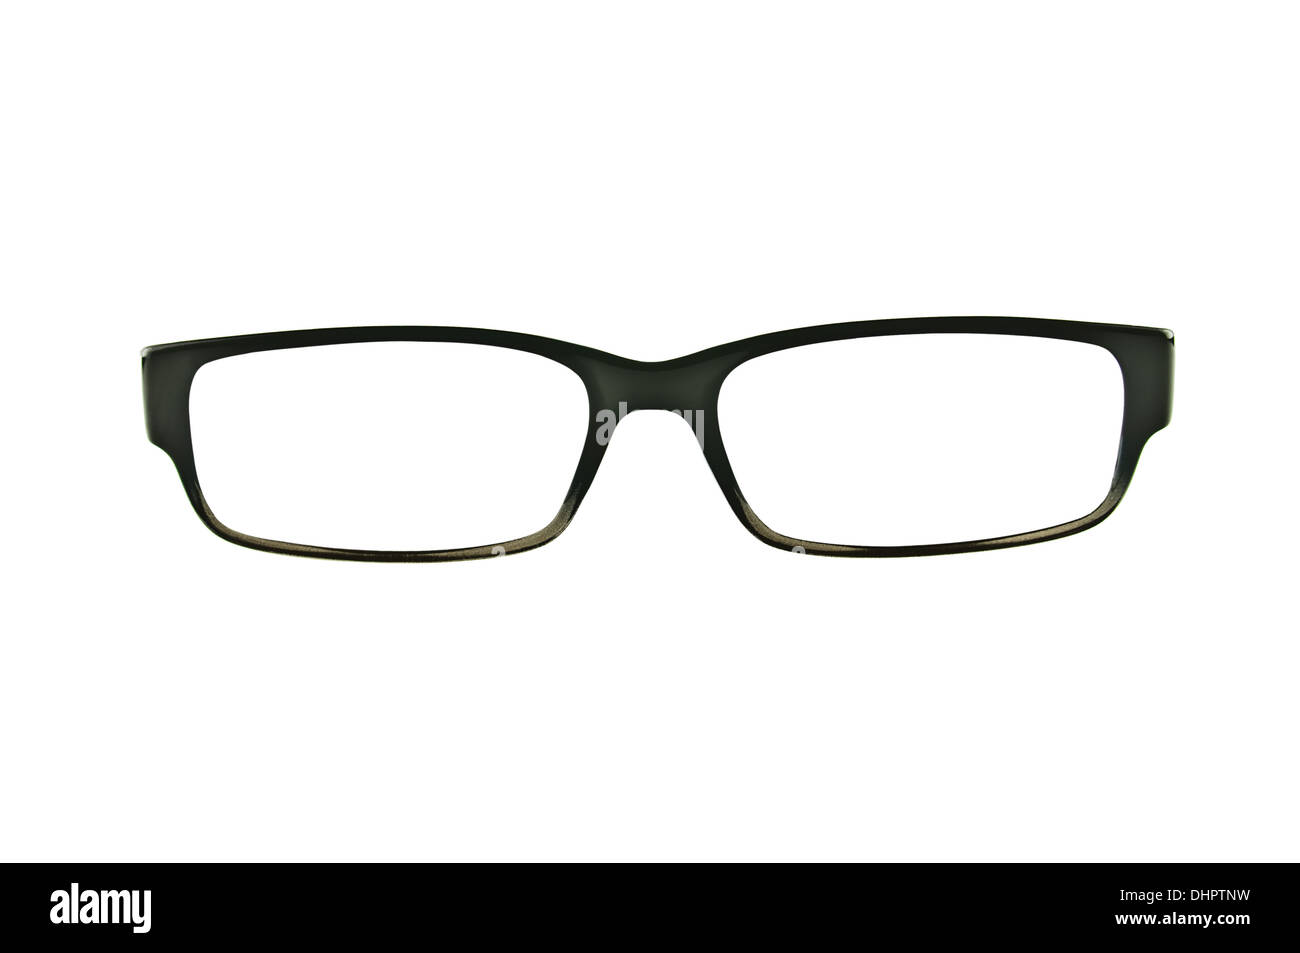 Marcos anteojos negros aislados en blanco puro Fotografía de stock Alamy